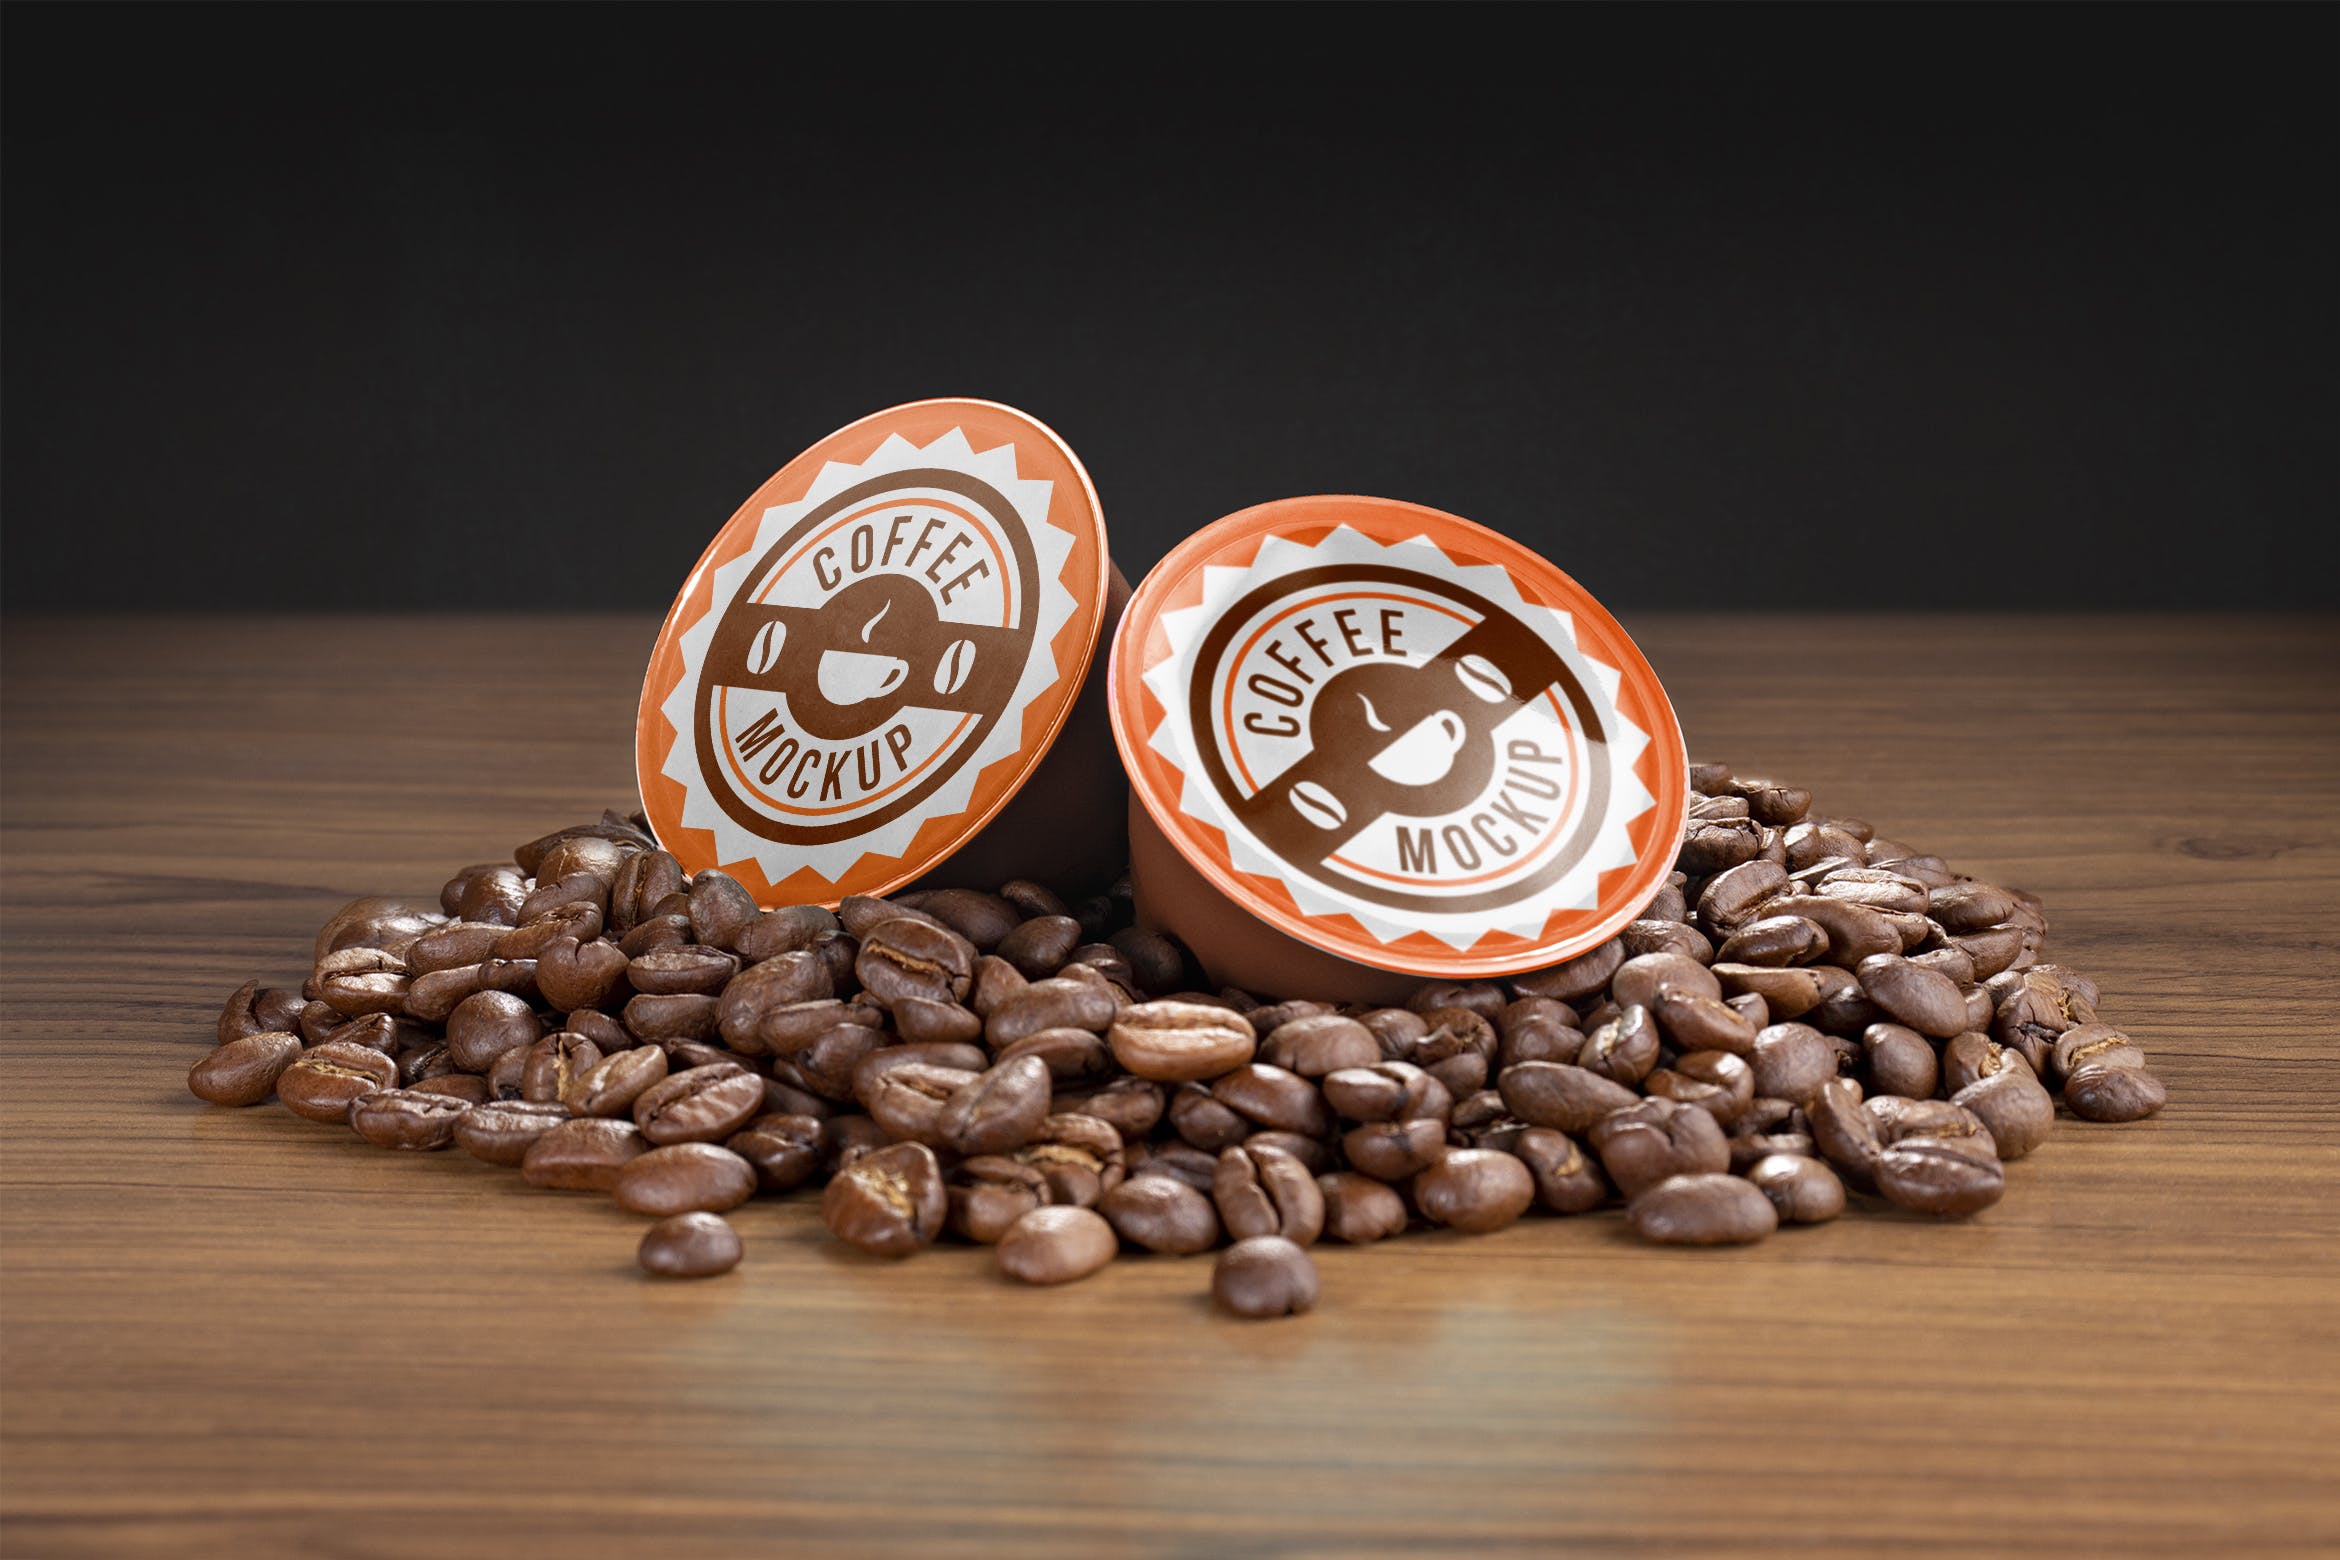 咖啡胶囊外包装设计第一素材精选模板 Coffee capsule mockup插图